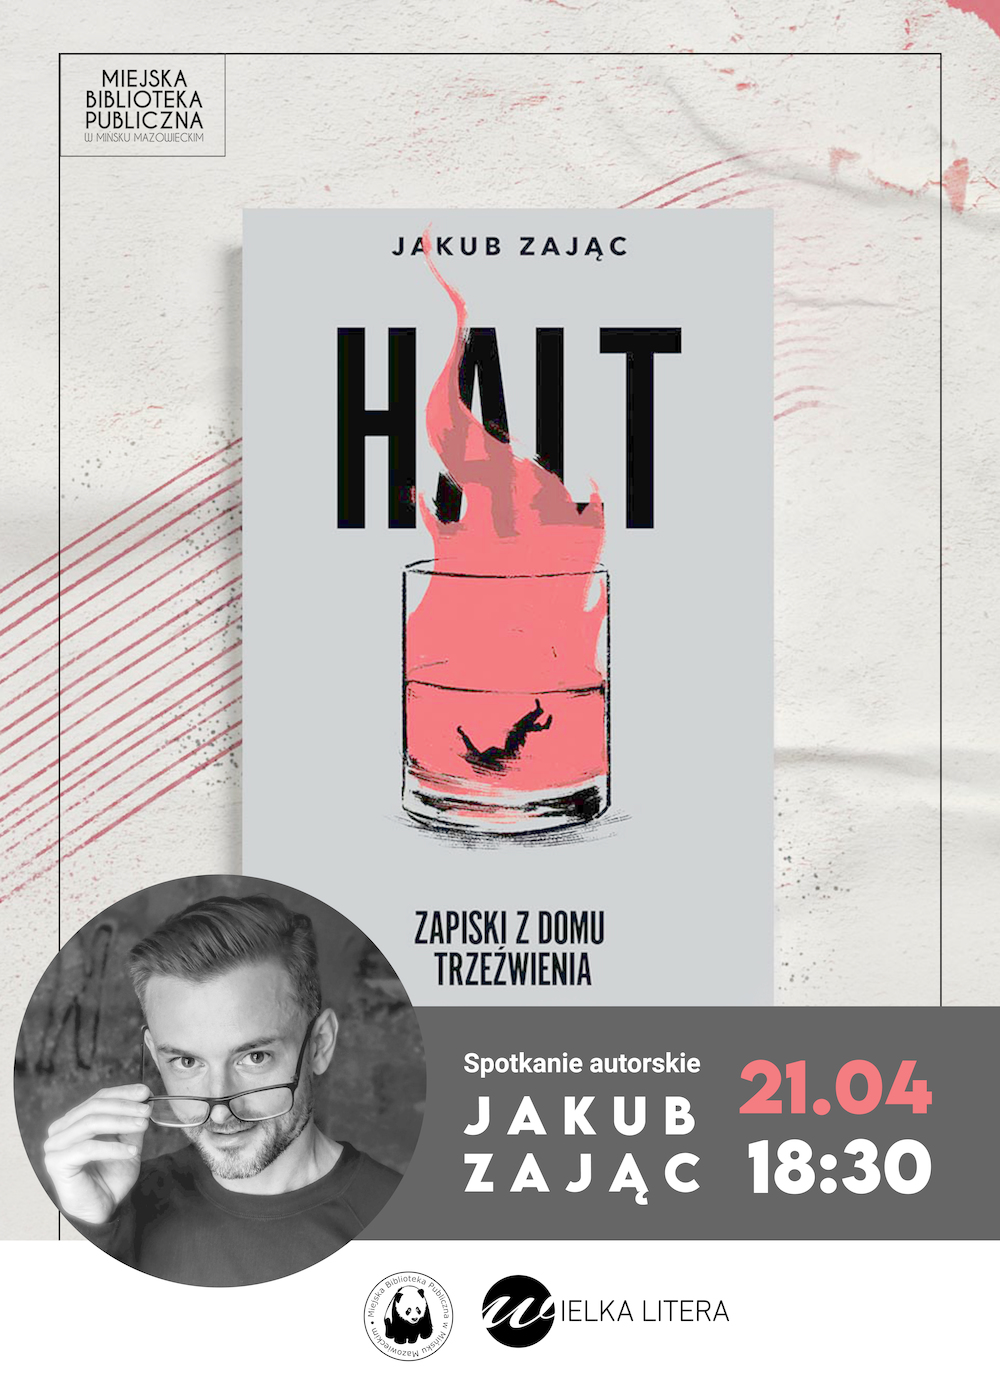 Spotkanie autorskie z Jakubem Zającem i promocja książki "Halt. Zapiski z domu trzeźwienia".